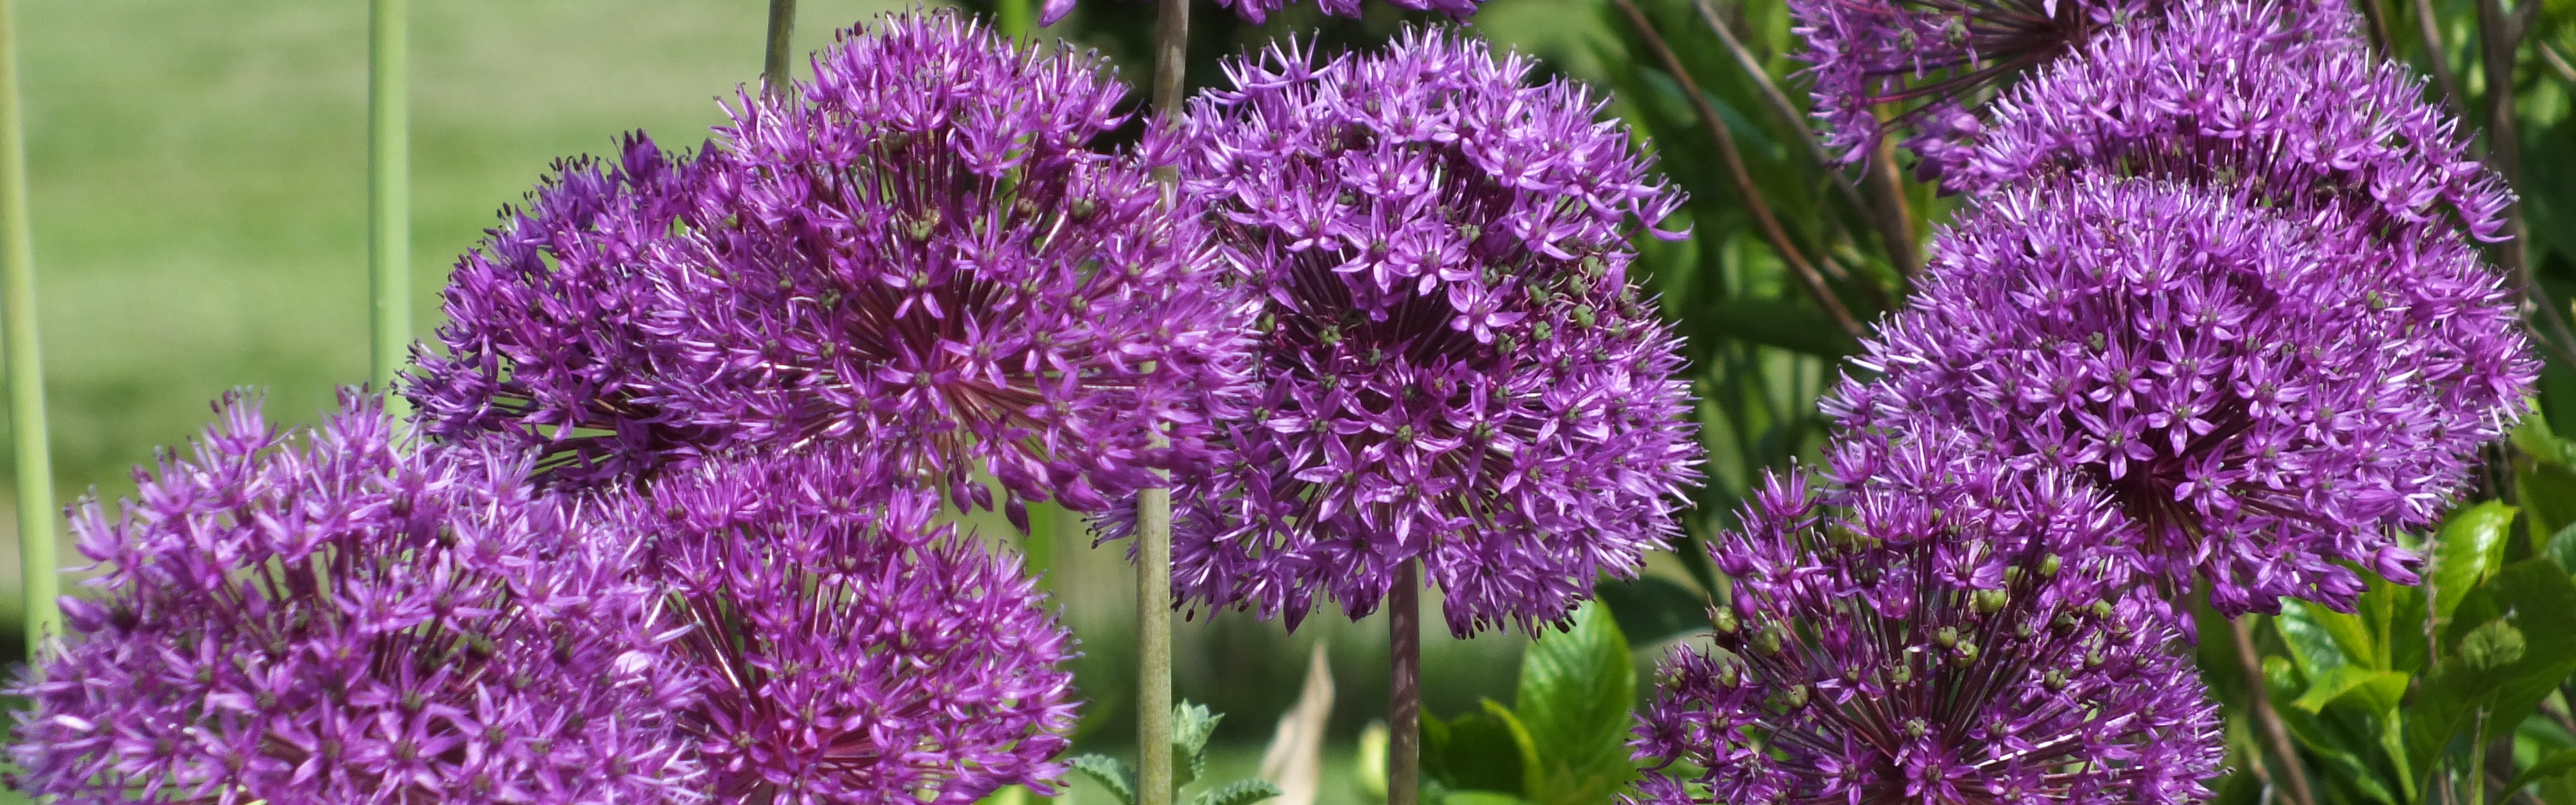 In Focus: Allium aflatunense Purple Sensation